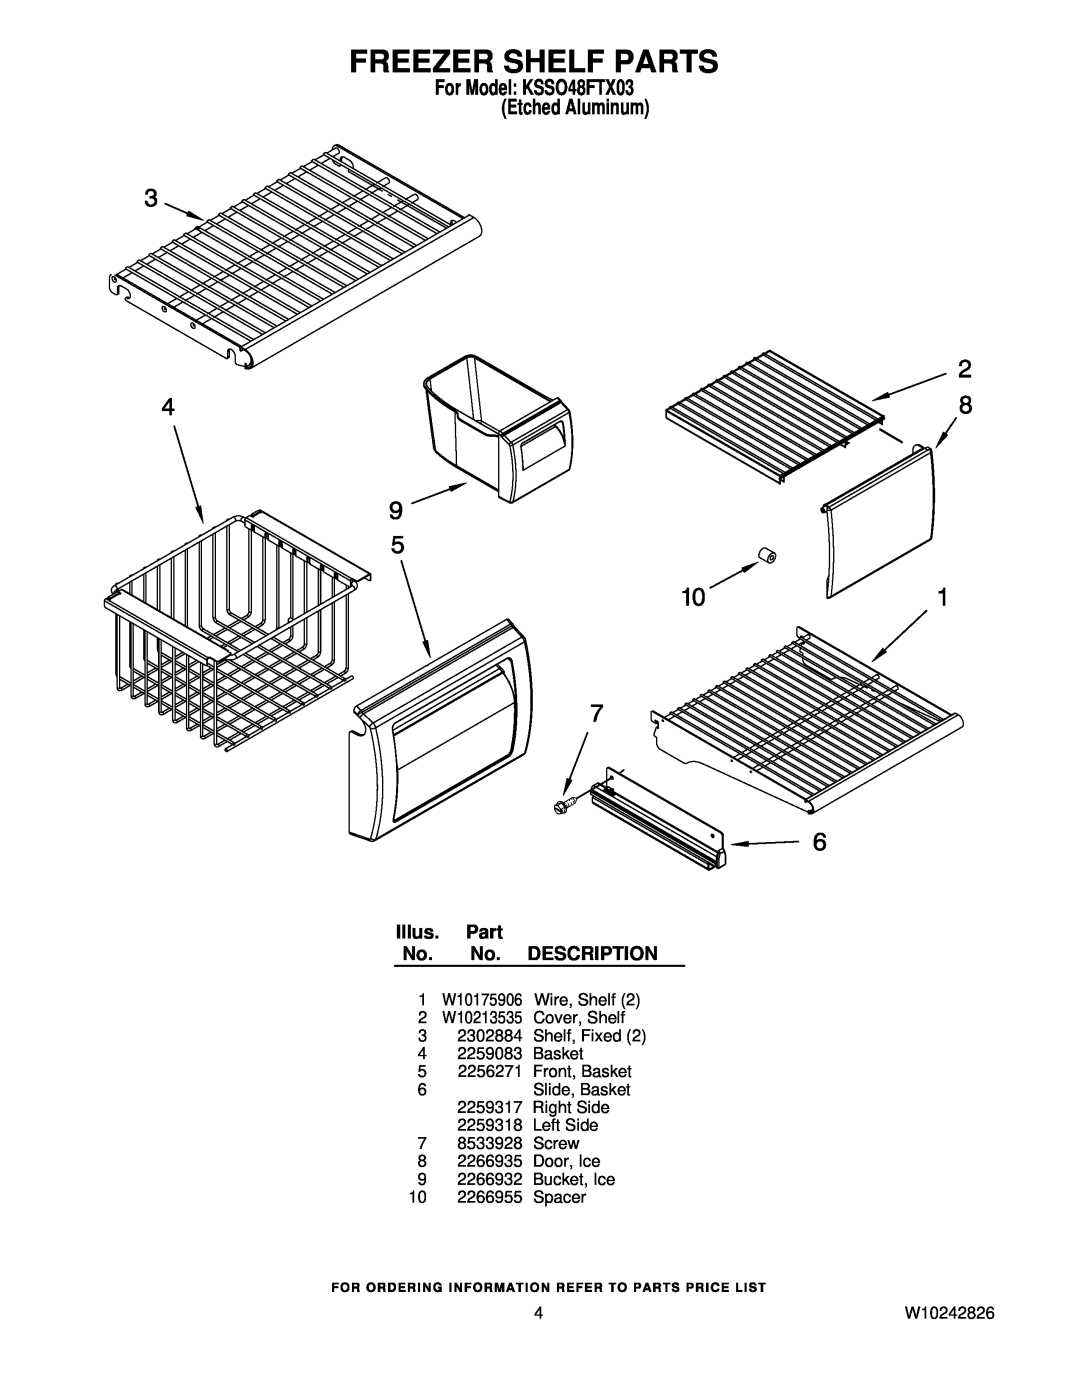 KitchenAid manual Freezer Shelf Parts, For Model KSSO48FTX03 Etched Aluminum, Illus. Part No. No. DESCRIPTION, W10242826 